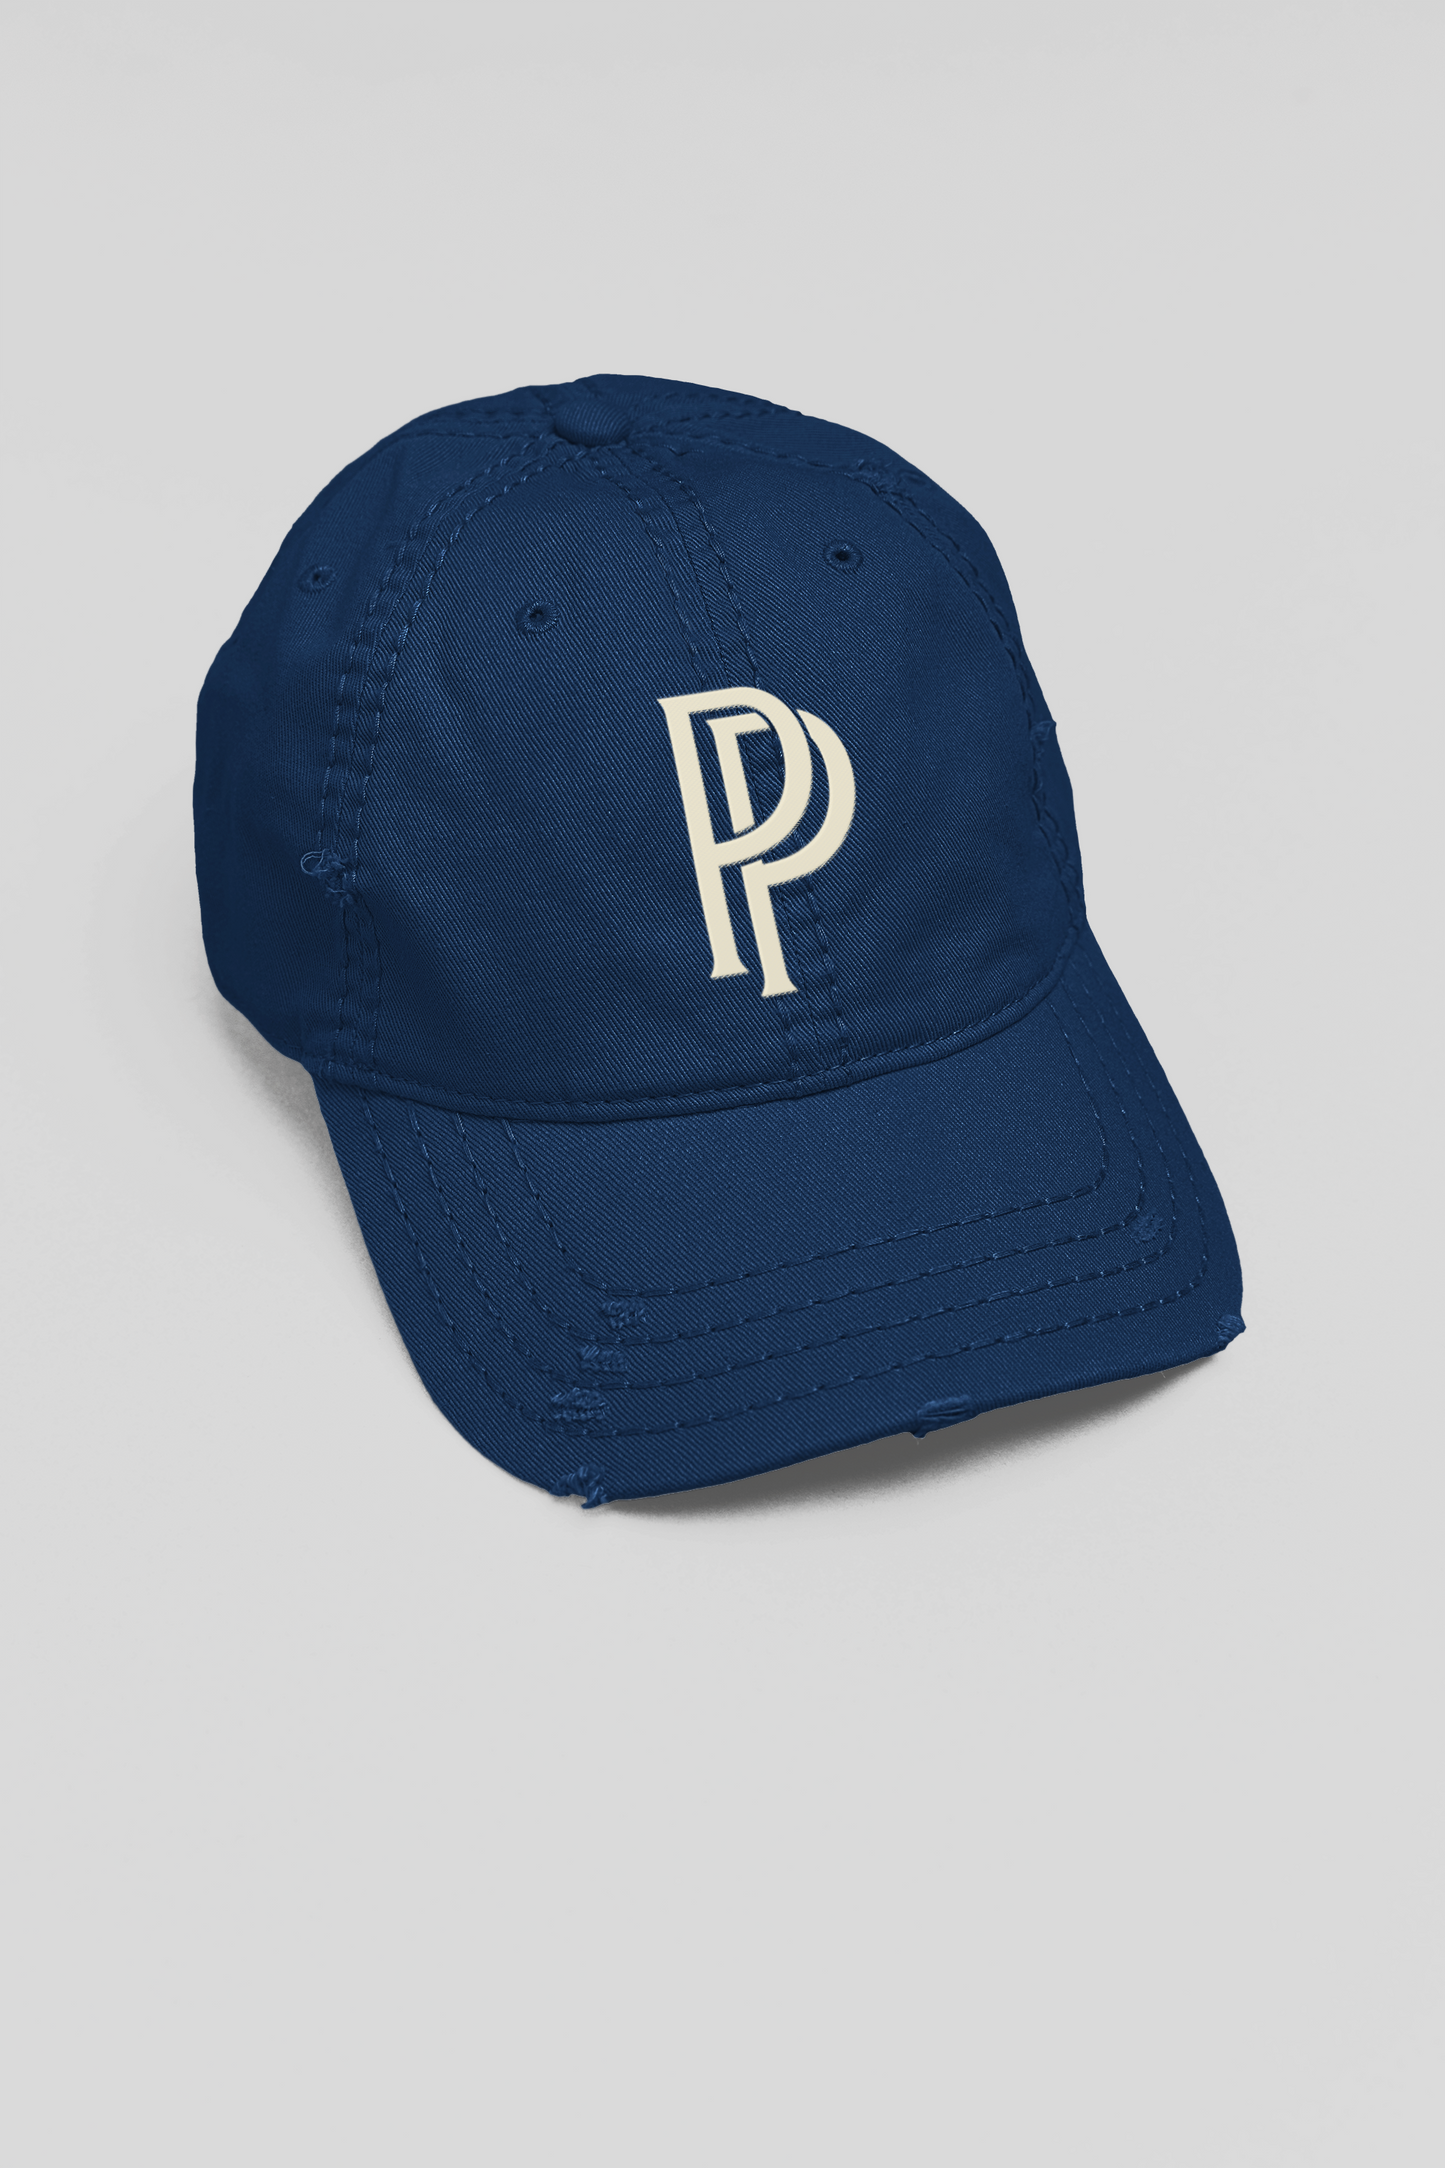 PP Monogram Dad Hat